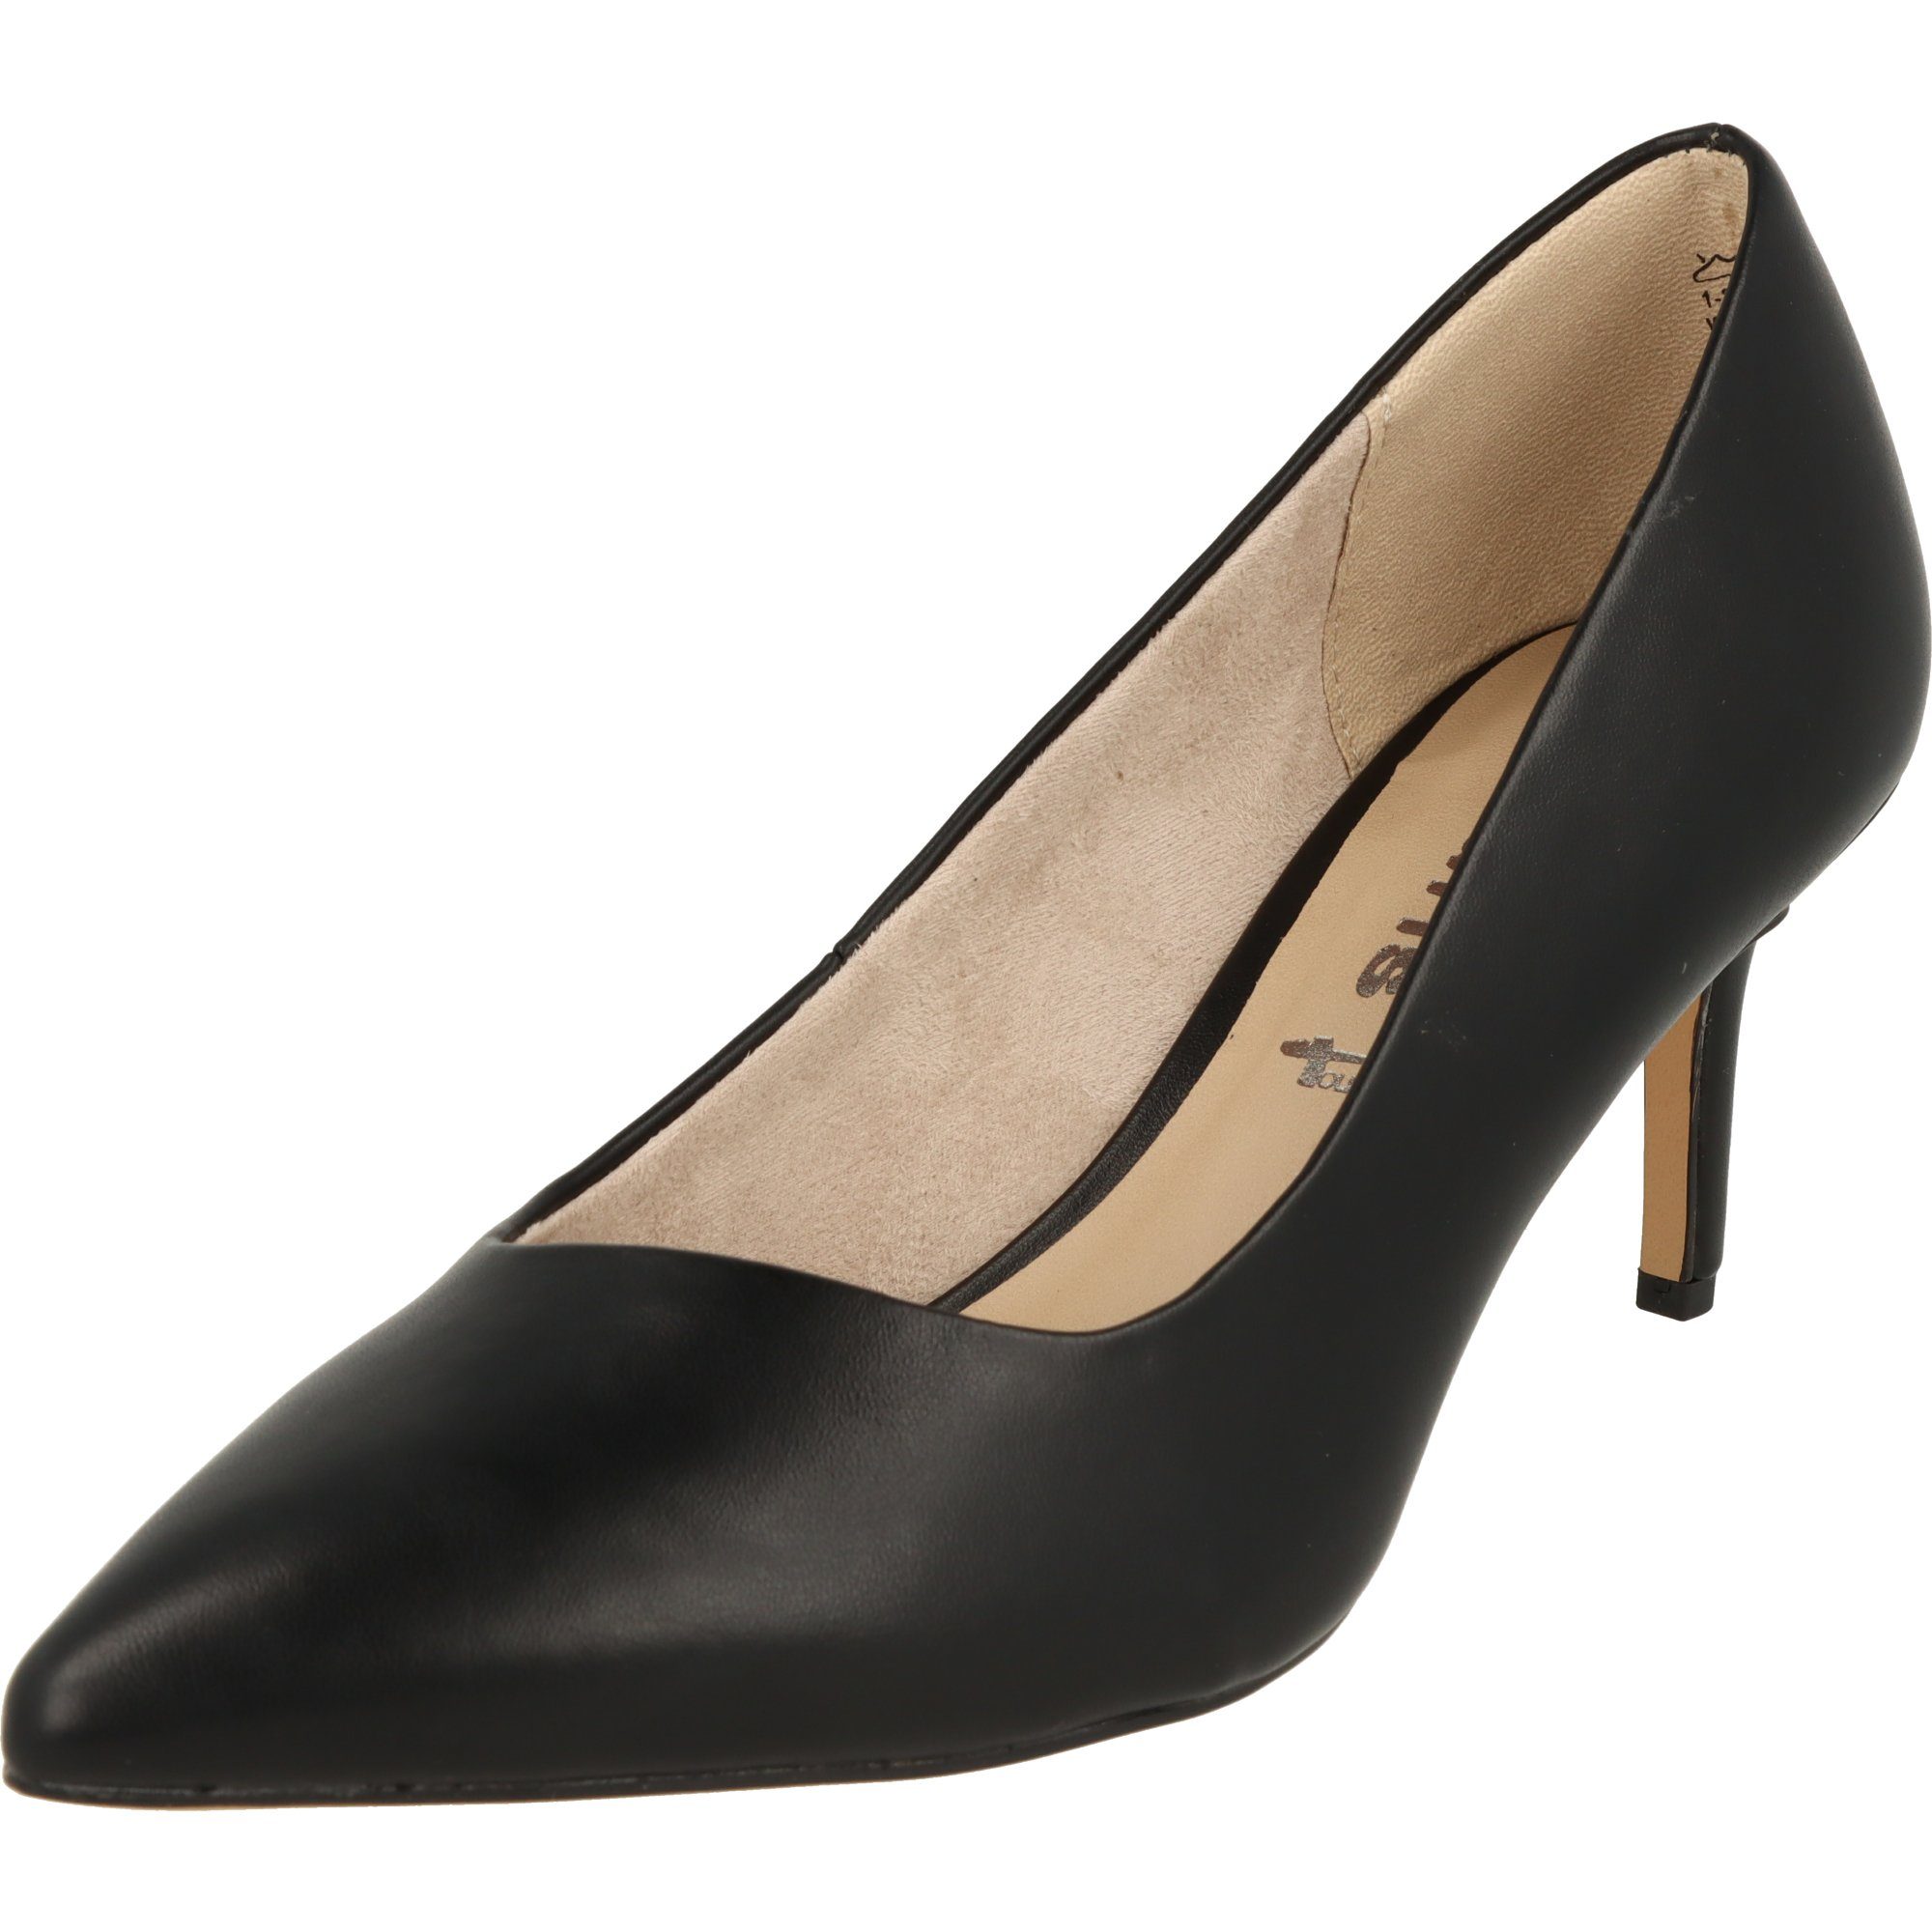 Tamaris »1-22421-28 elegante Damen Schuhe Pumps 001 Schwarz Glatt« Pumps  online kaufen | OTTO